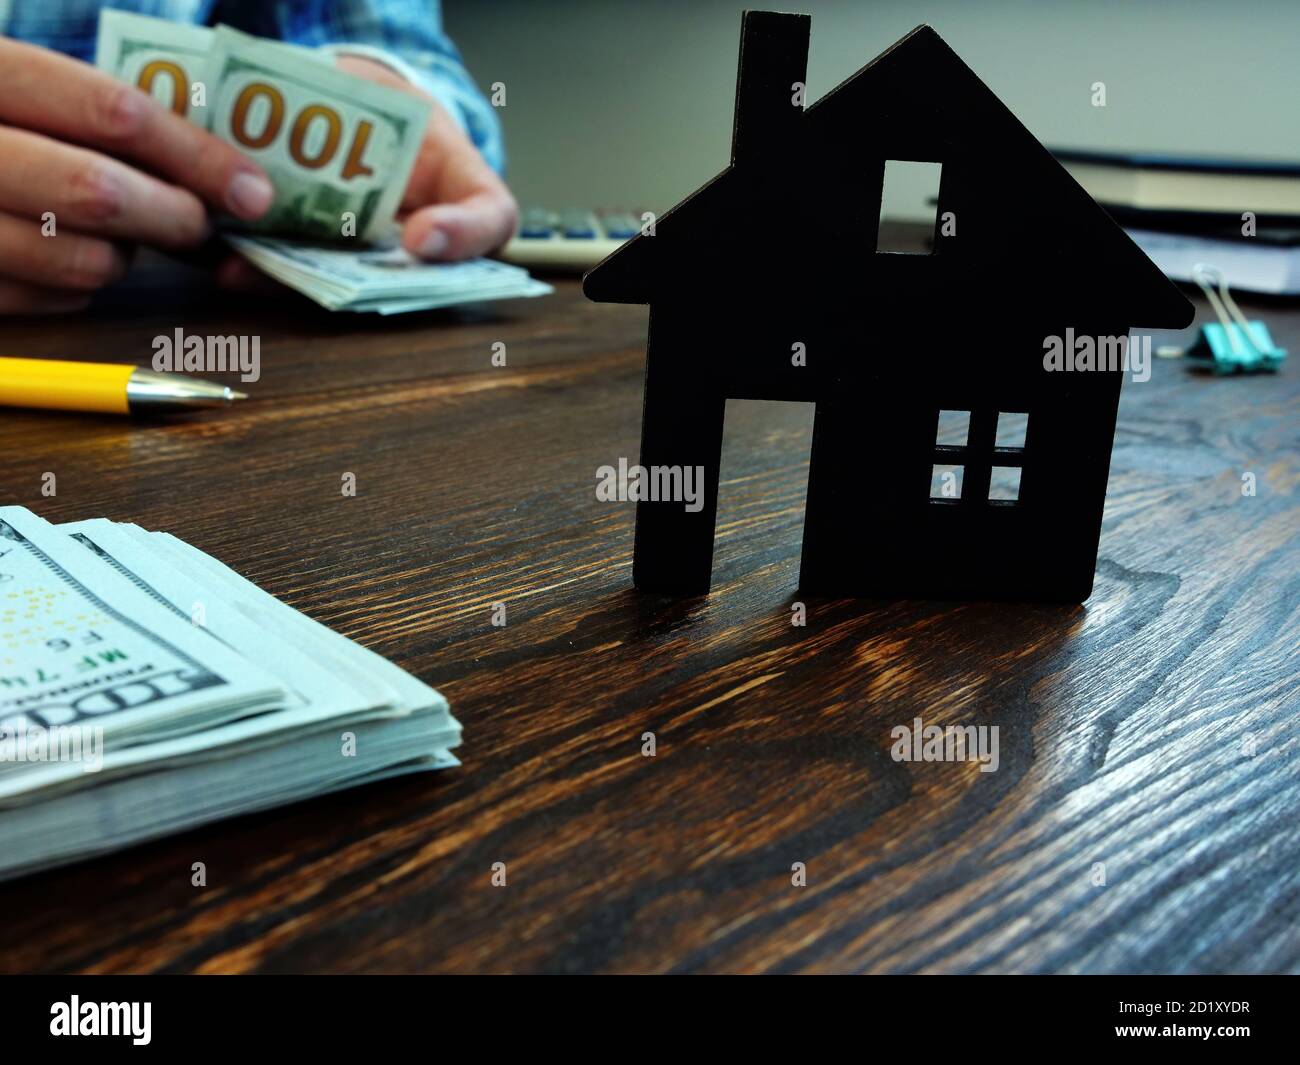 L'homme compte de l'argent pour acheter une maison, une hypothèque ou un loyer. Banque D'Images